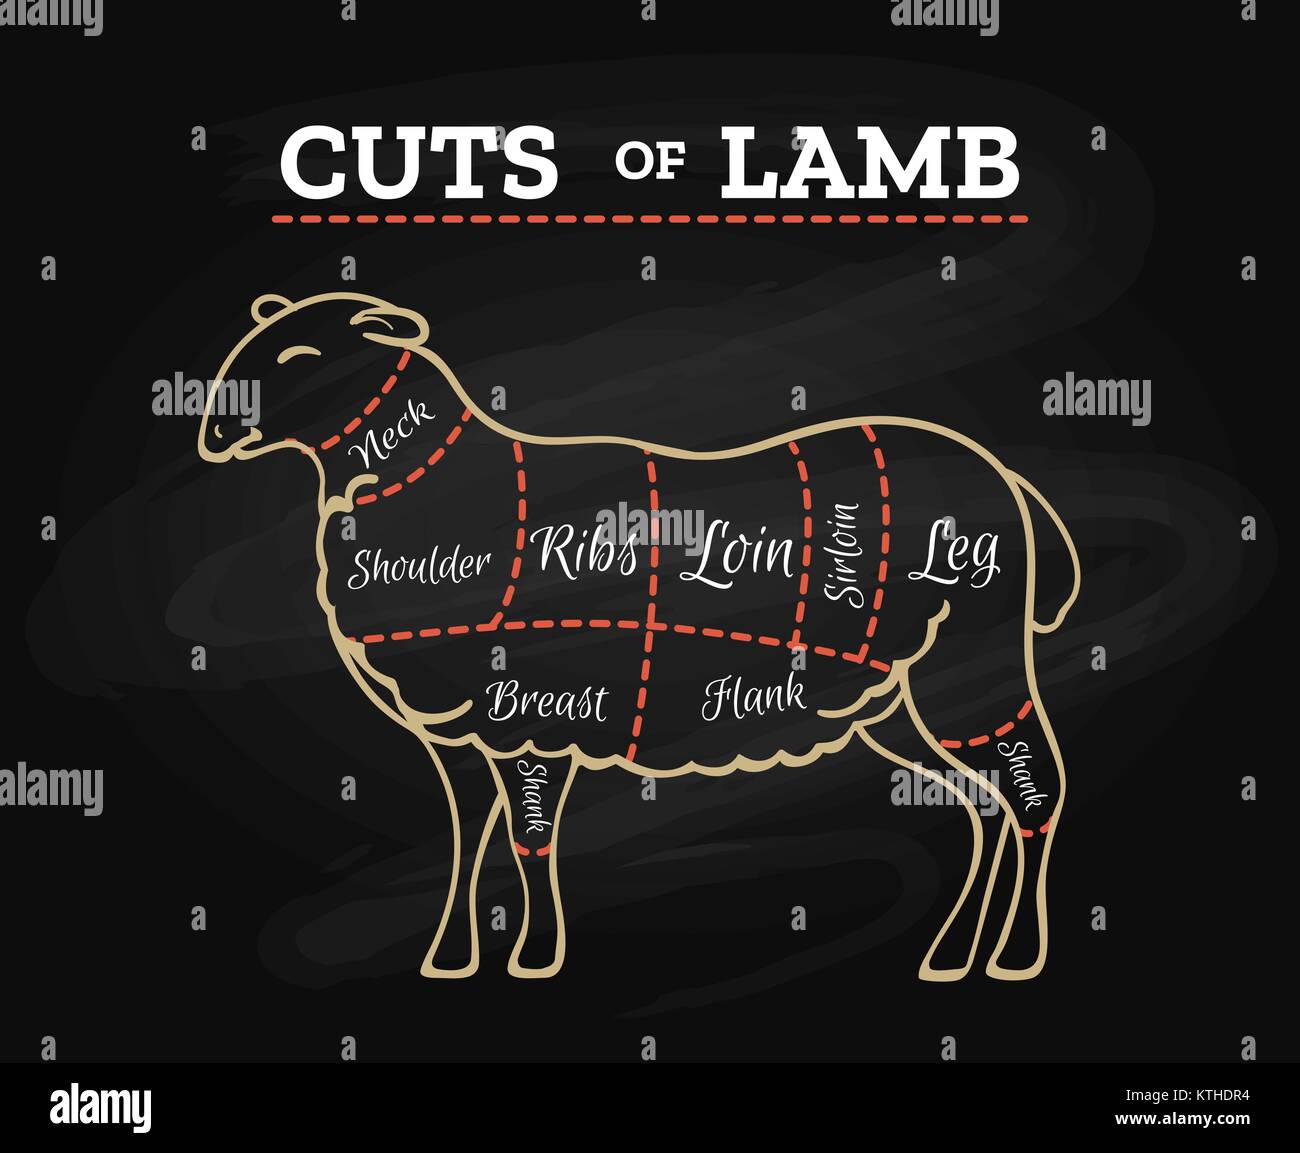 Gráfico de cortes de carne de cordero. Ovejas o corderos bistec de carne carnicero pizarra en plan retro estilo dibujados a mano ilustración vectorial Ilustración del Vector